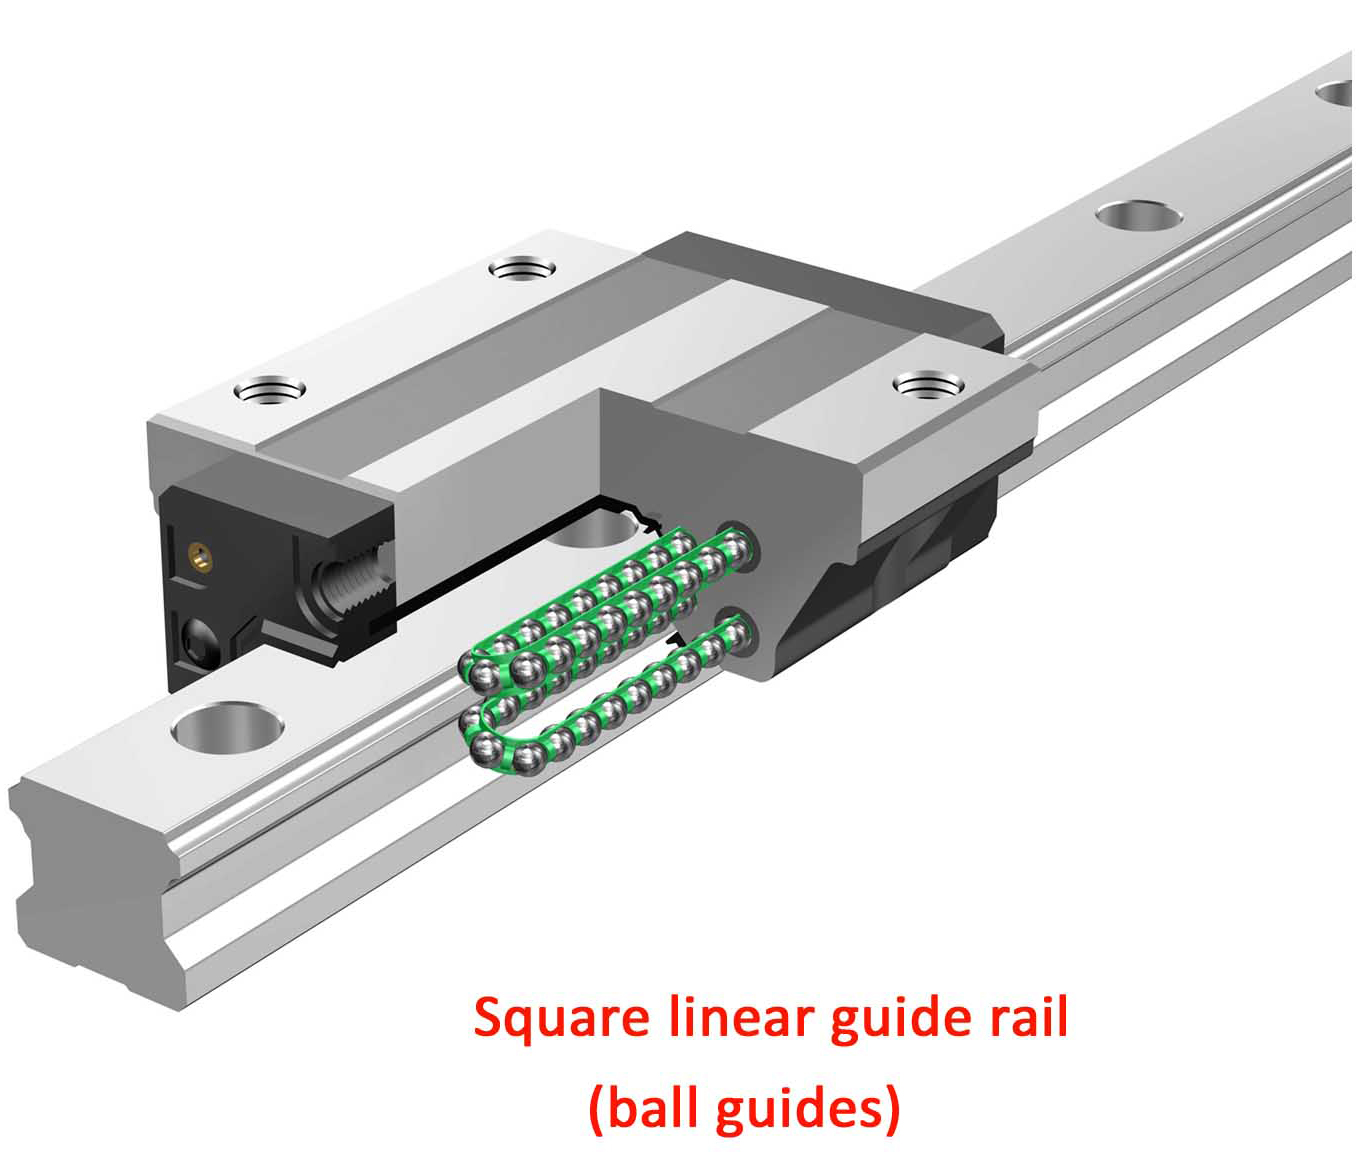 XY-linear-guide-rail-laser